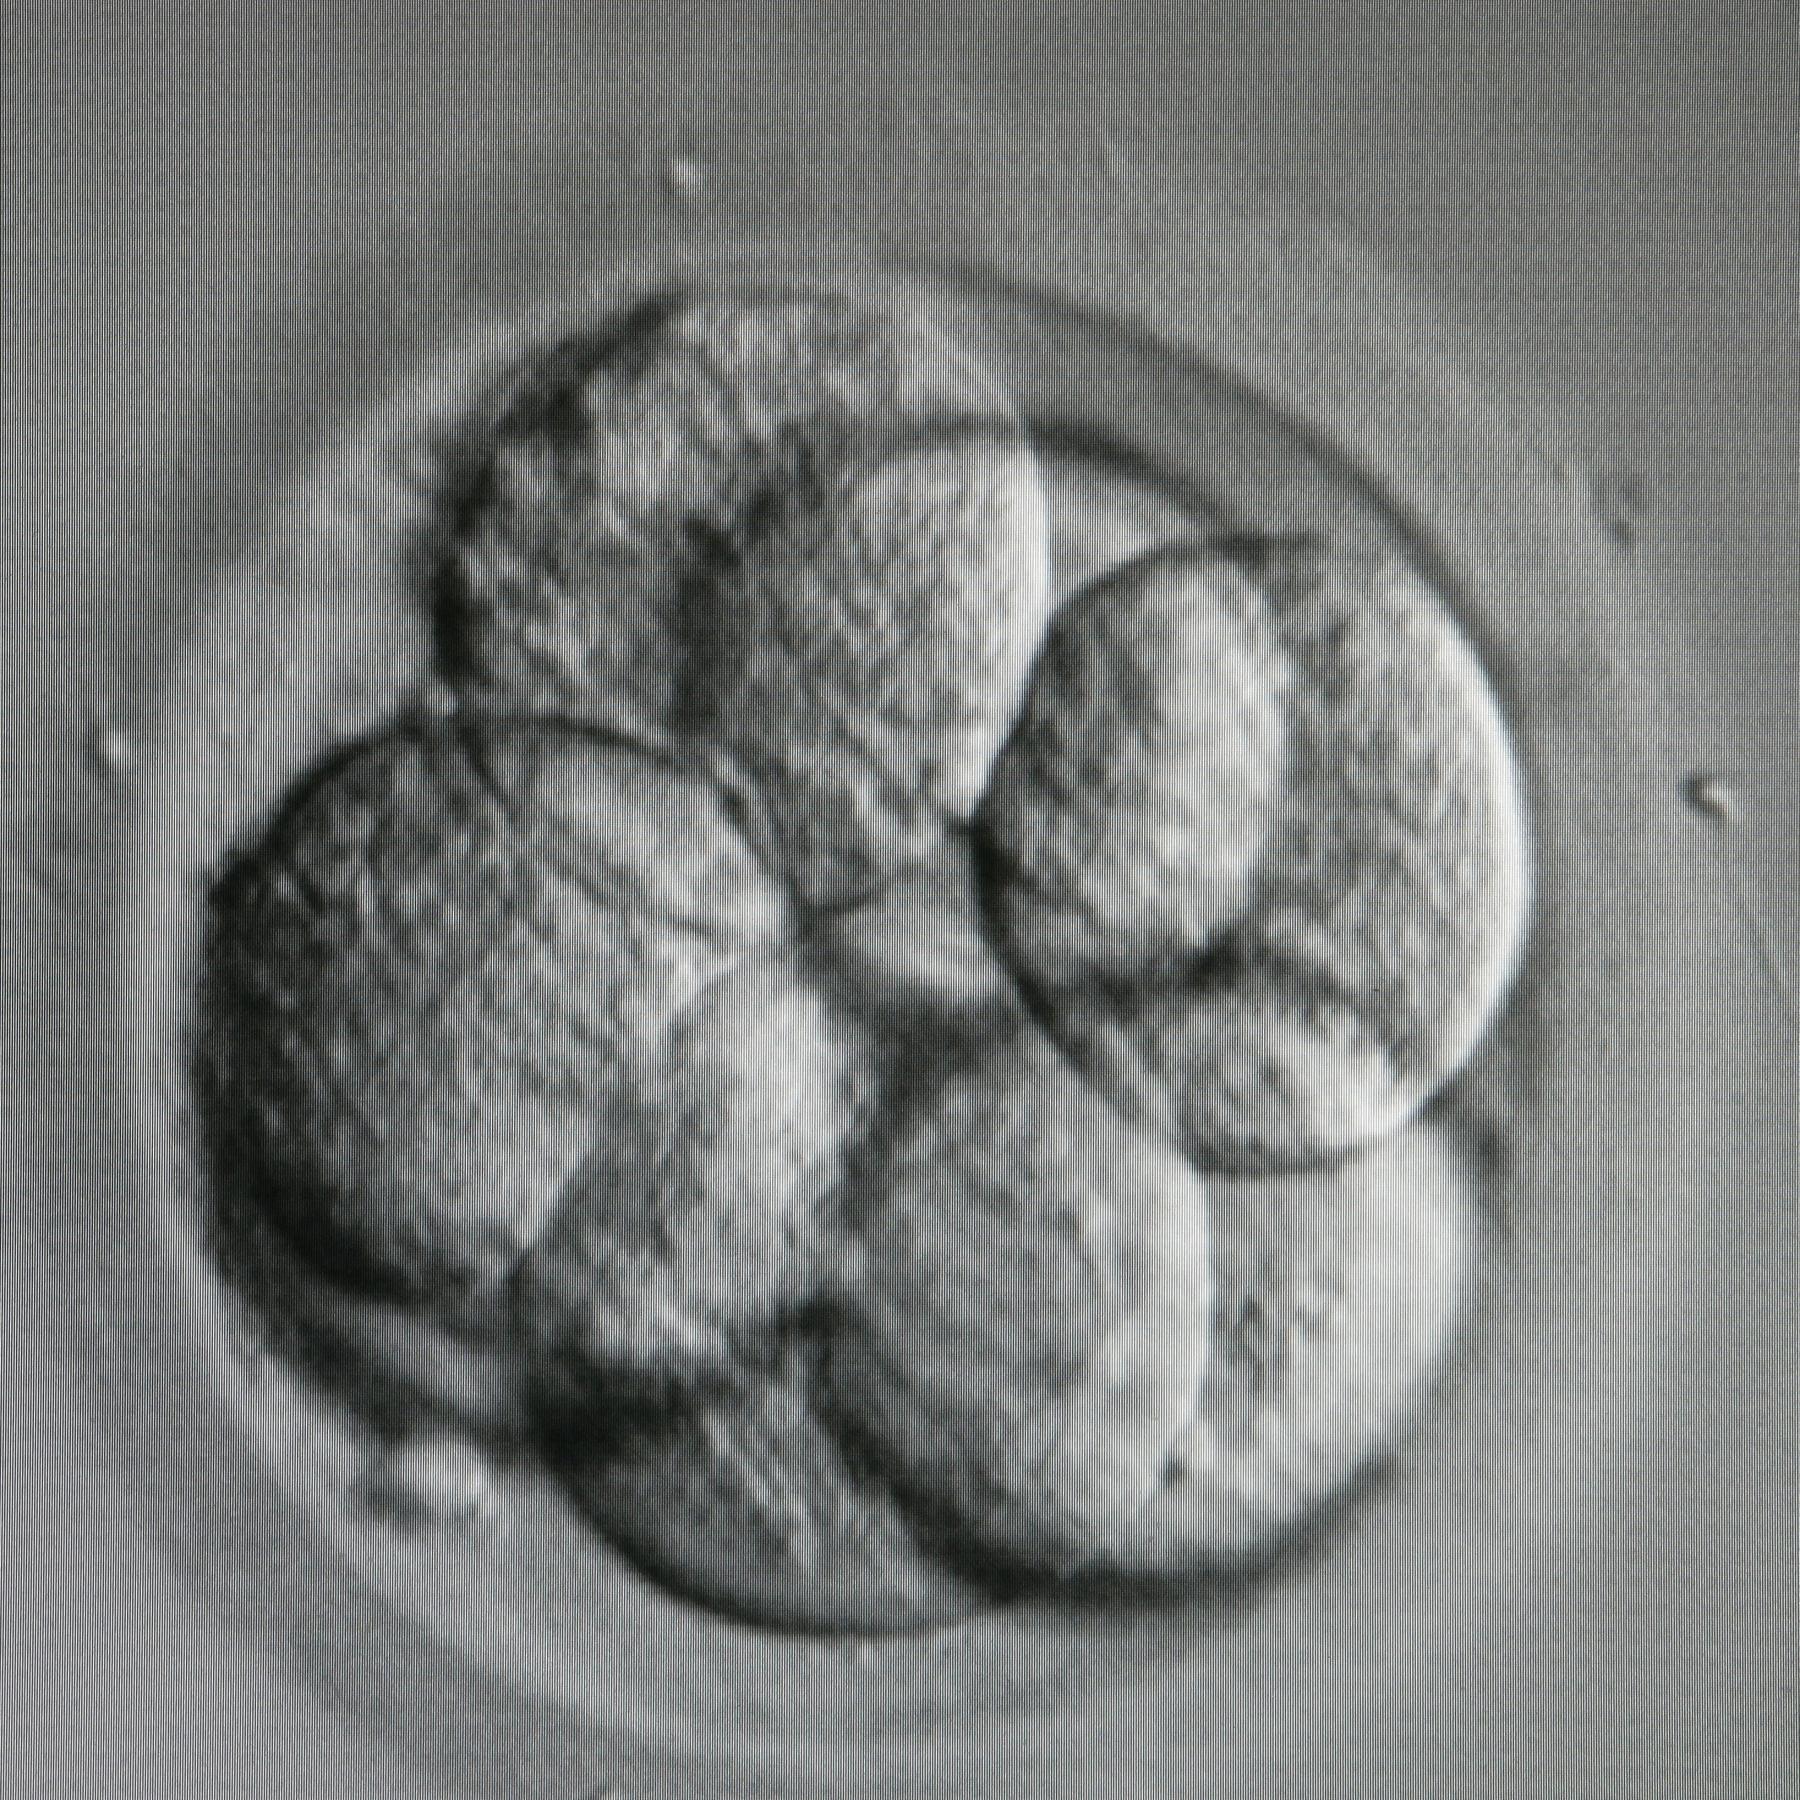 Der Umgang mit Embryo-Modellen - Zwischen Forschung, Recht und Ethik